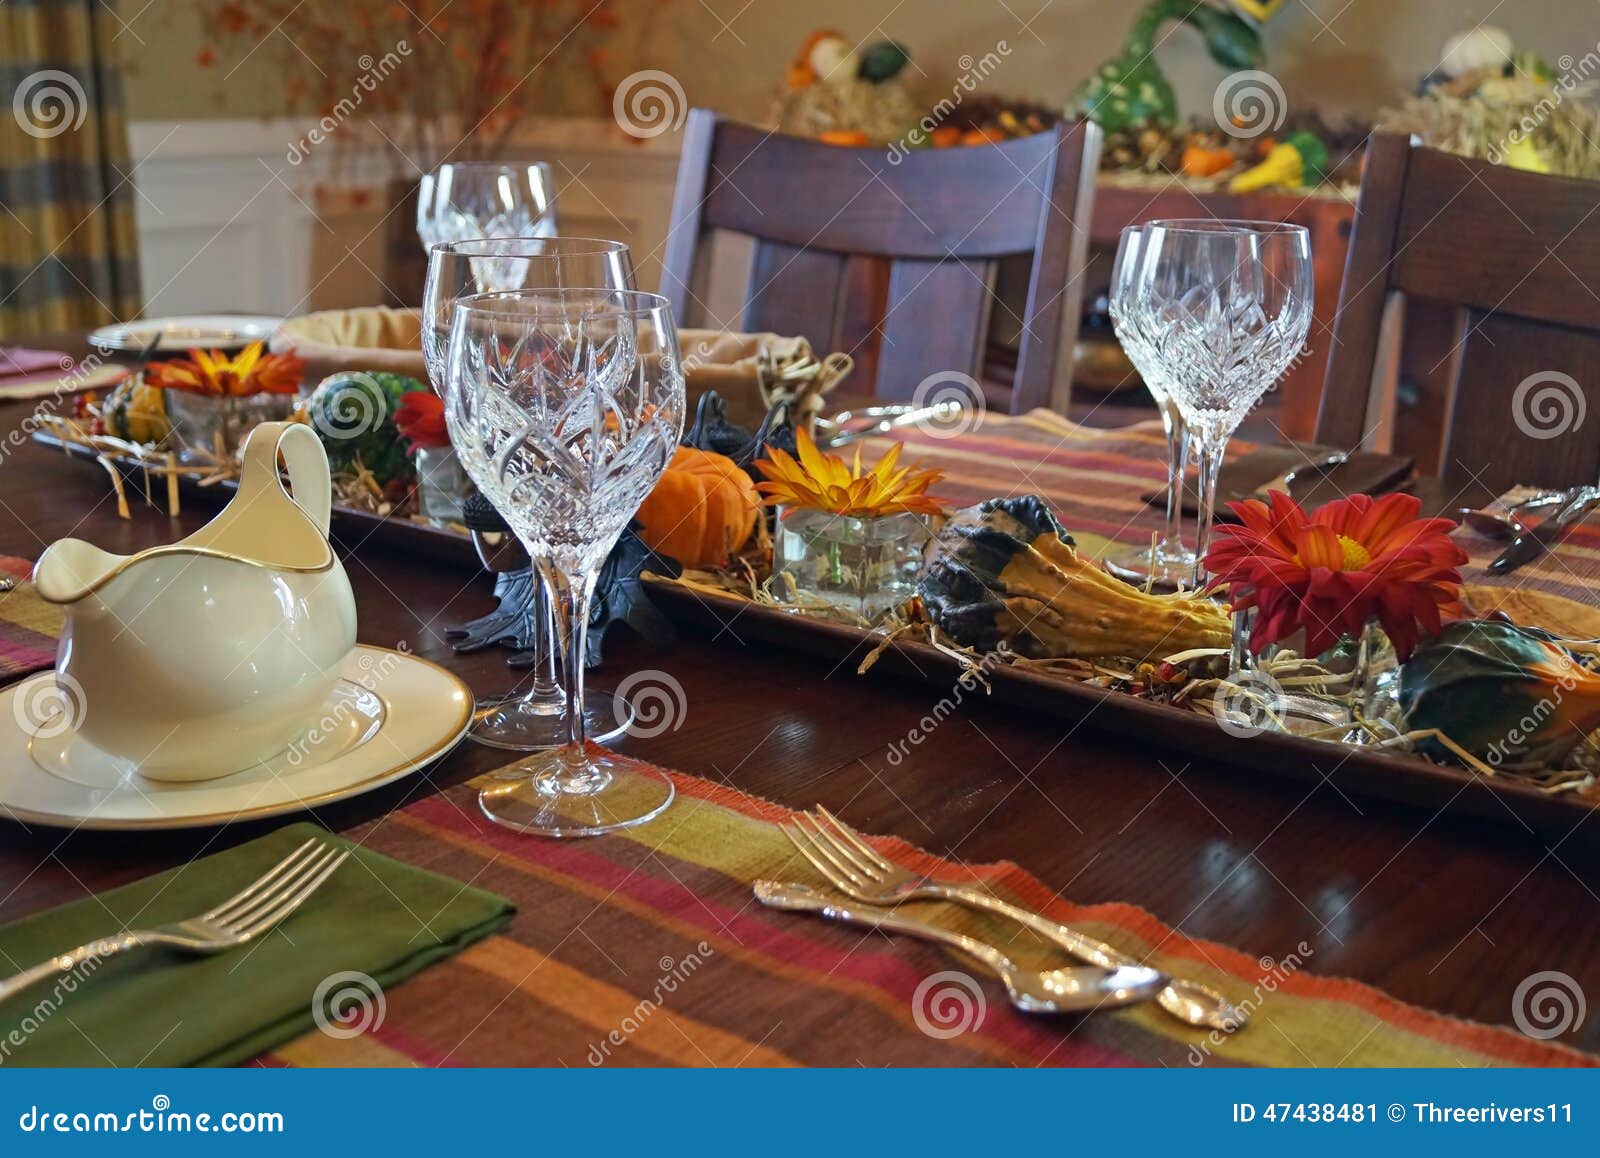 Elegant Thanksgiving Dinner Table Stock Image - Image of glasses, gravy ...